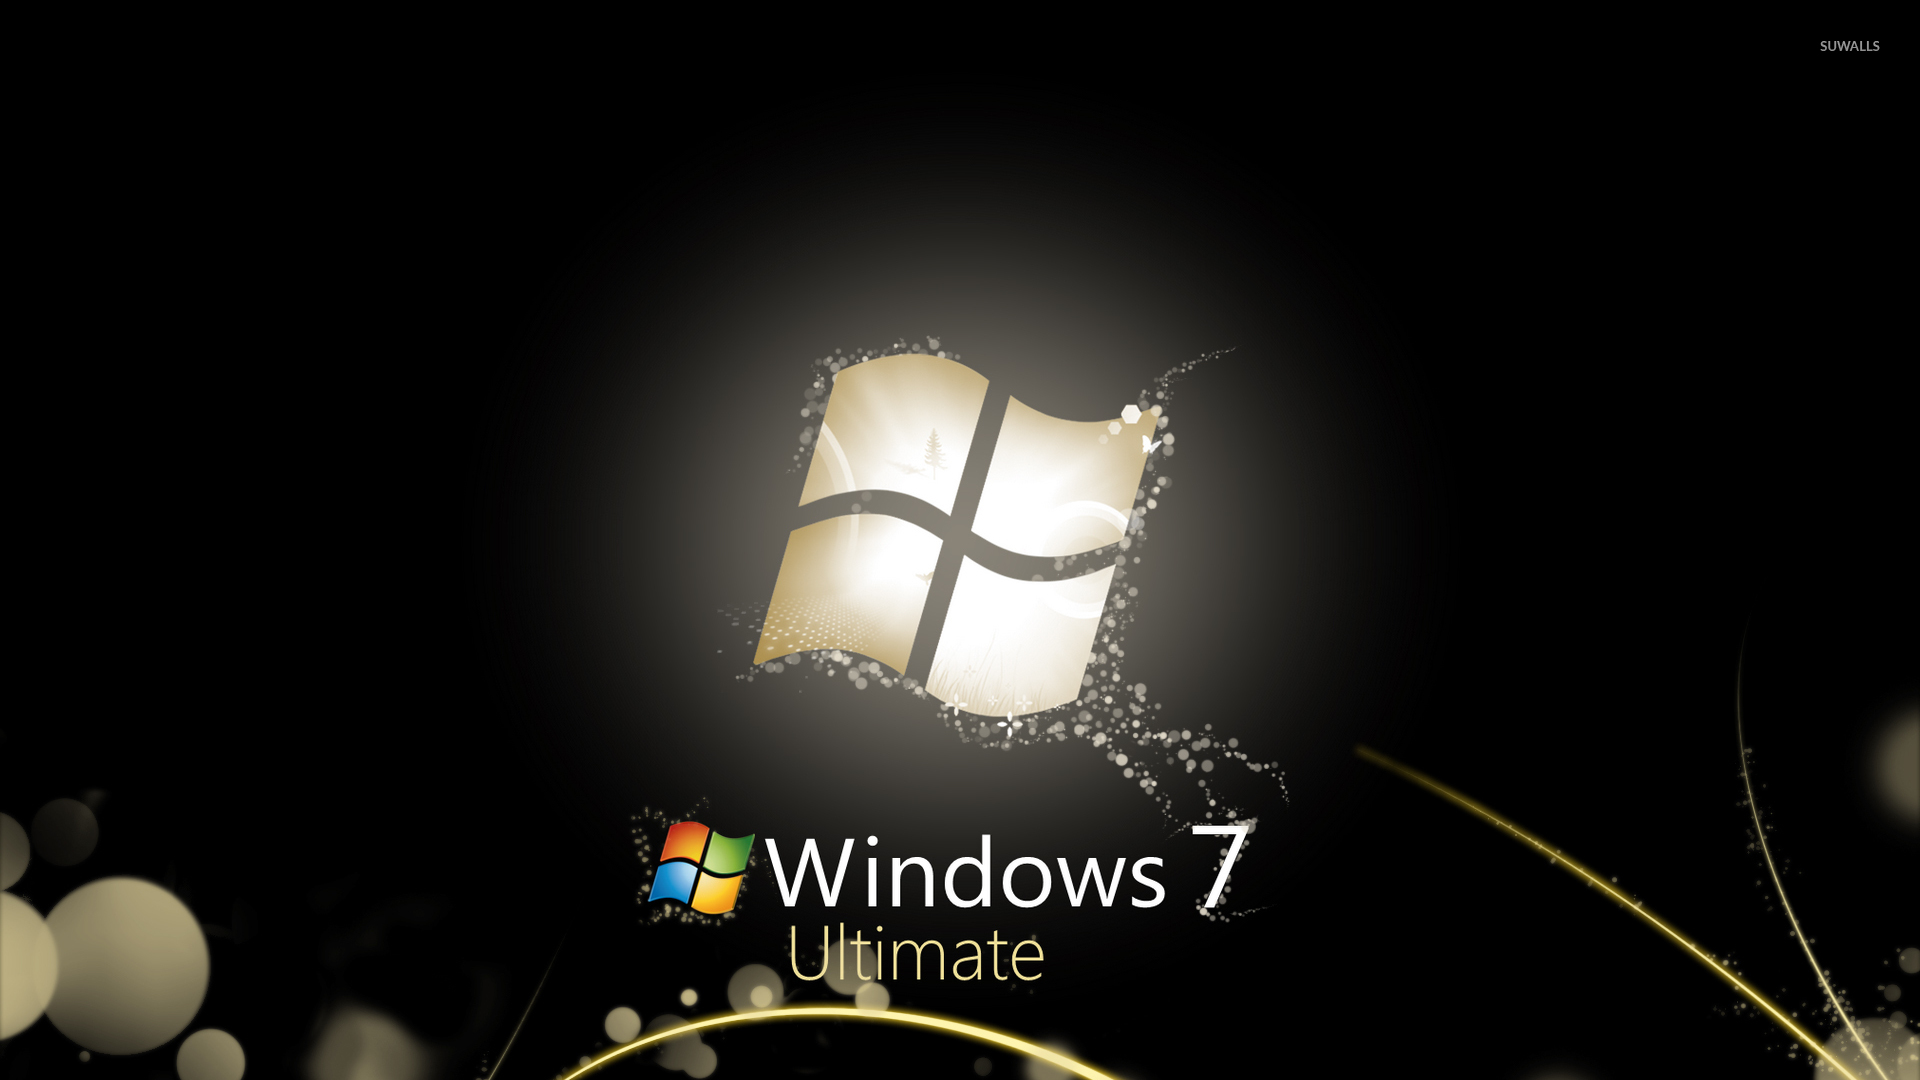 Thay đổi hình nền desktop của bạn với những hình ảnh nền tuyệt đẹp của Windows 7 Ultimate Wallpaper 1920x